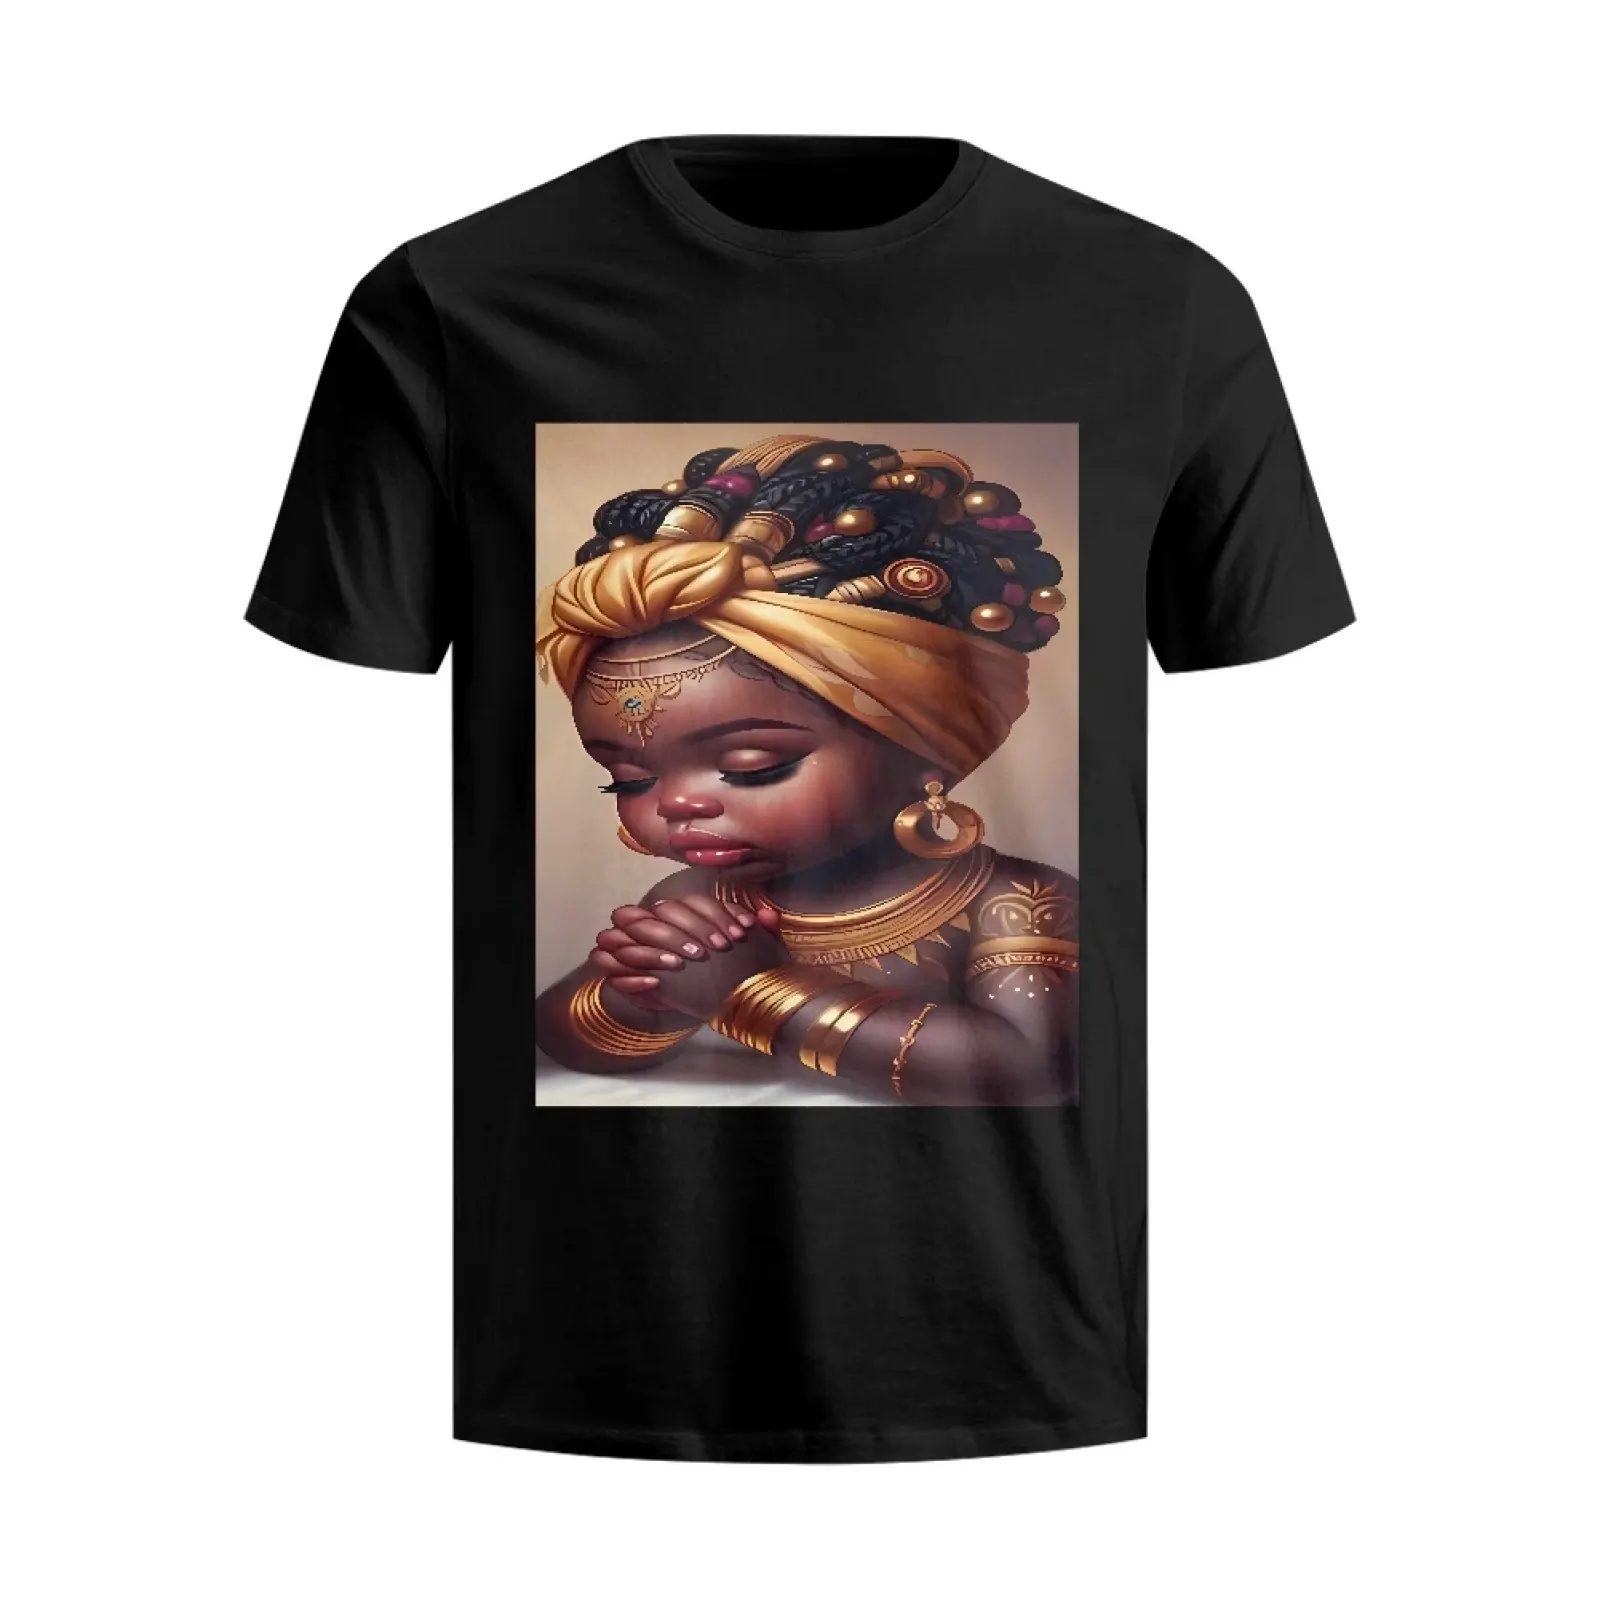 귀여운 아기 소녀 인쇄 여성 남성 티셔츠 블랙 라운드 넥 짧은 소매 여름 탑 캐주얼 웃긴 티셔츠 코튼 티셔츠 팜므